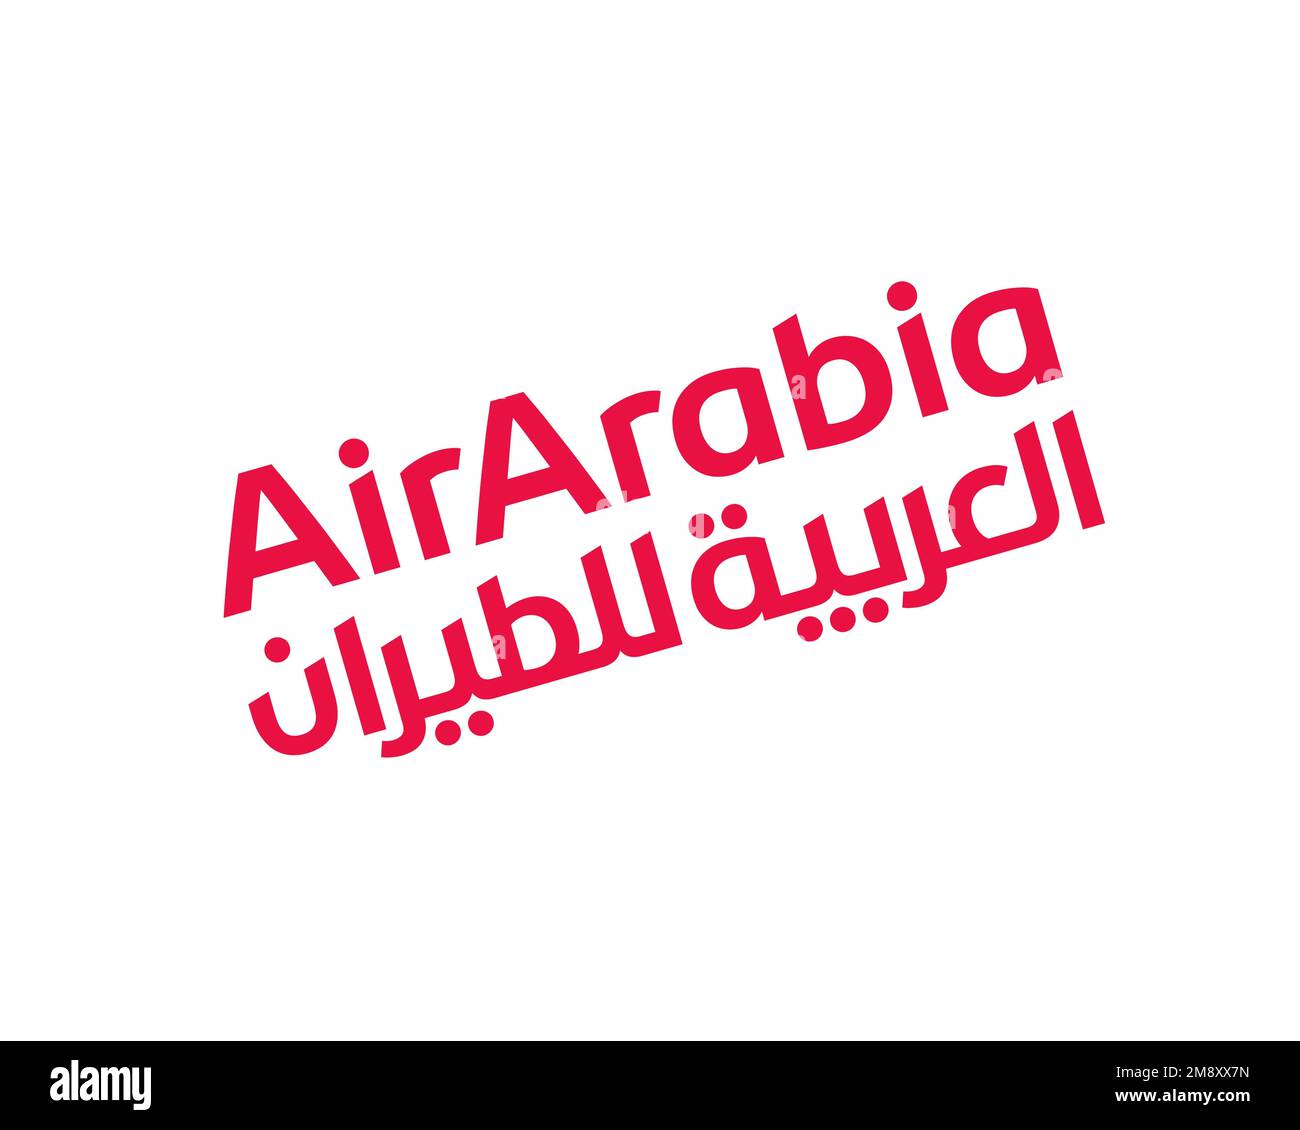 Aggregate 79+ air arabia logo latest - ceg.edu.vn